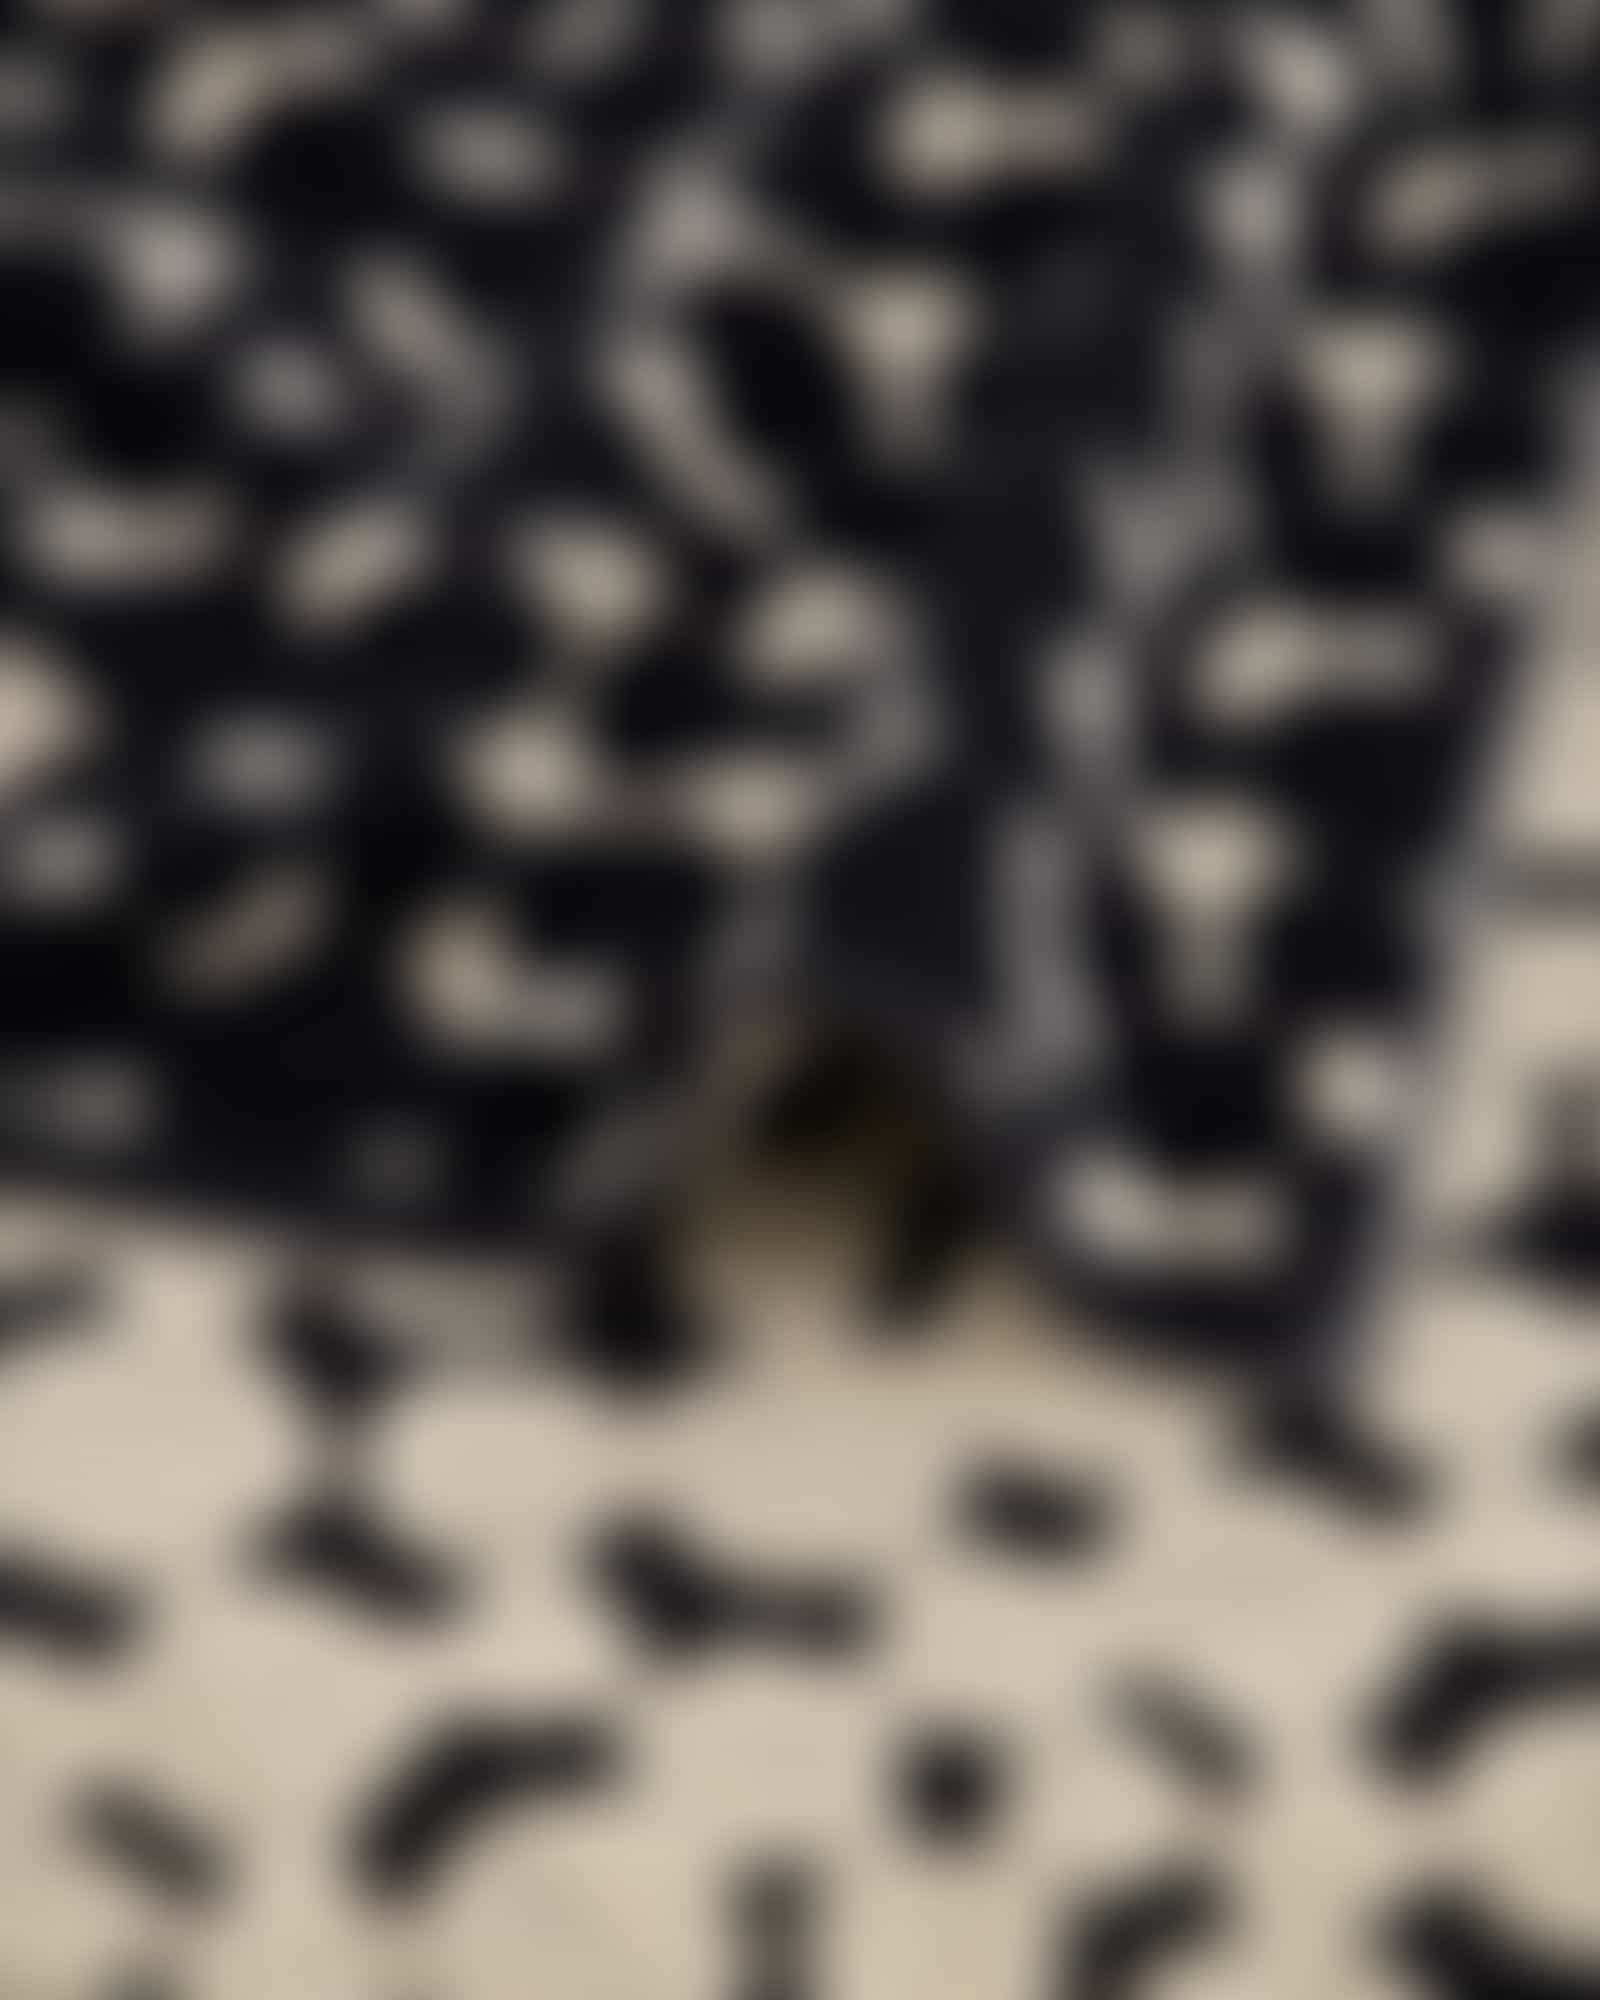 Cawö Handtücher Loft Pebbles 6224 - Farbe: schwarz - 39 - Duschtuch 70x140 cm